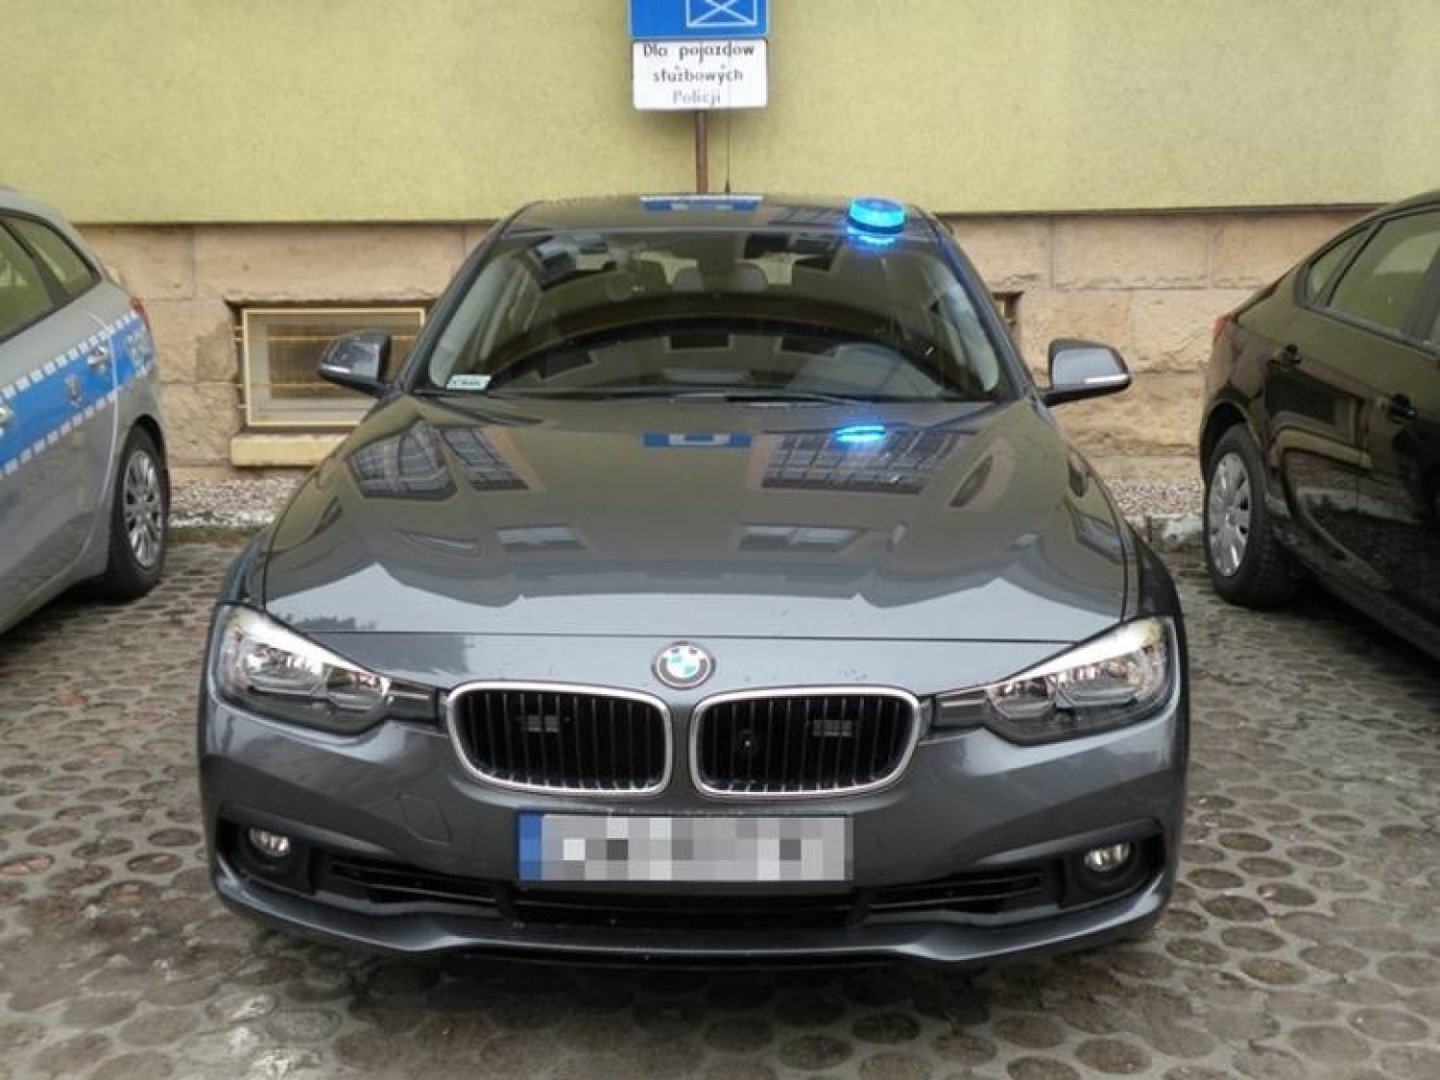 Policja wybrała BMW. Przetarg na 140 nieoznakowanych